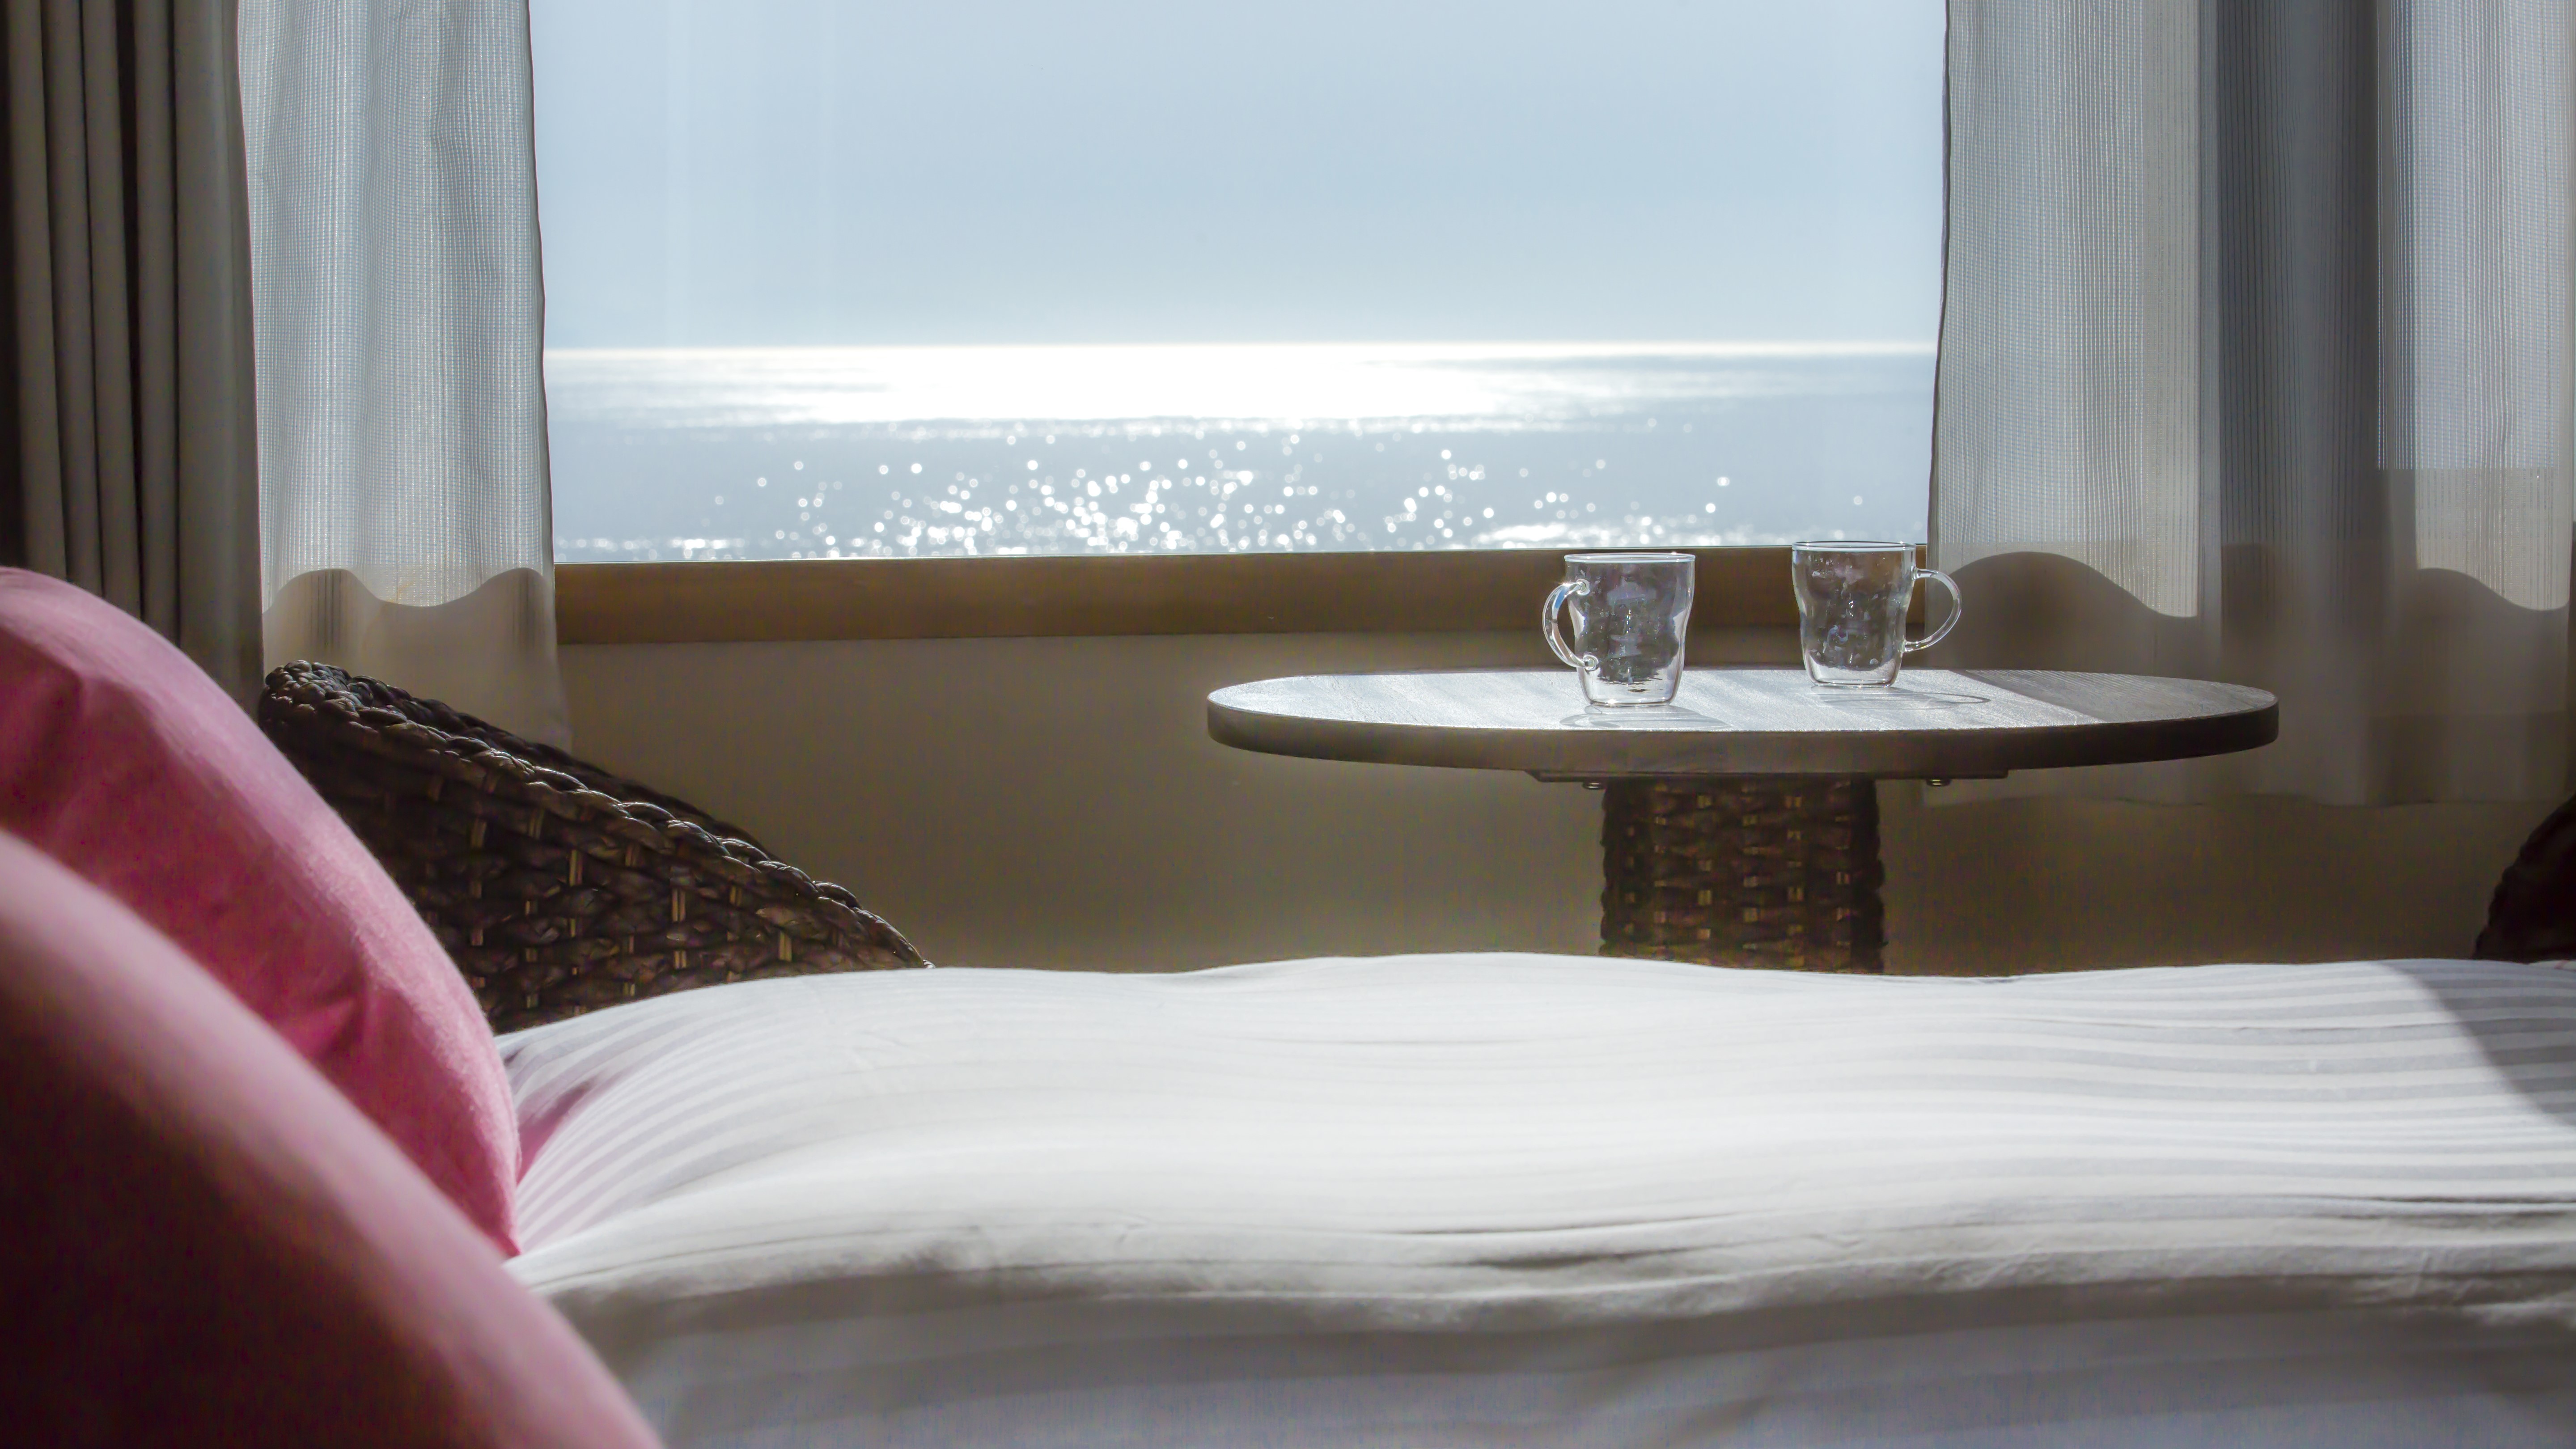 【客室からの眺望】オーシャンビューの客室からは美しい海が一望できます。